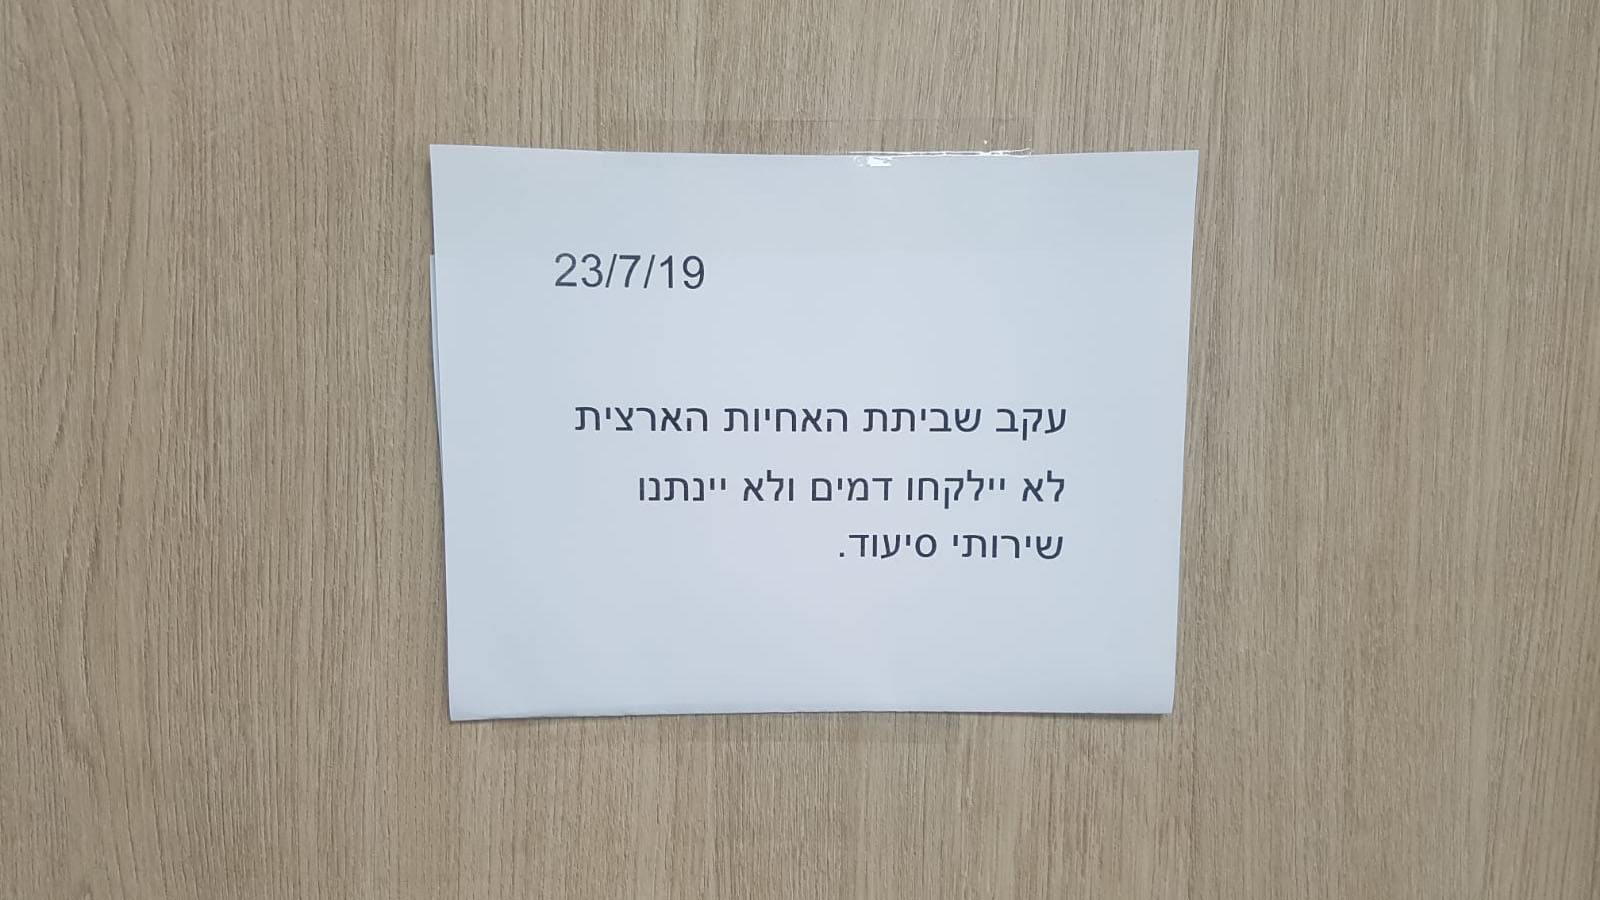 שלט המודיע על שביתת האחיות במרפאת פרונט בחיפה (צילום: שי ניר)